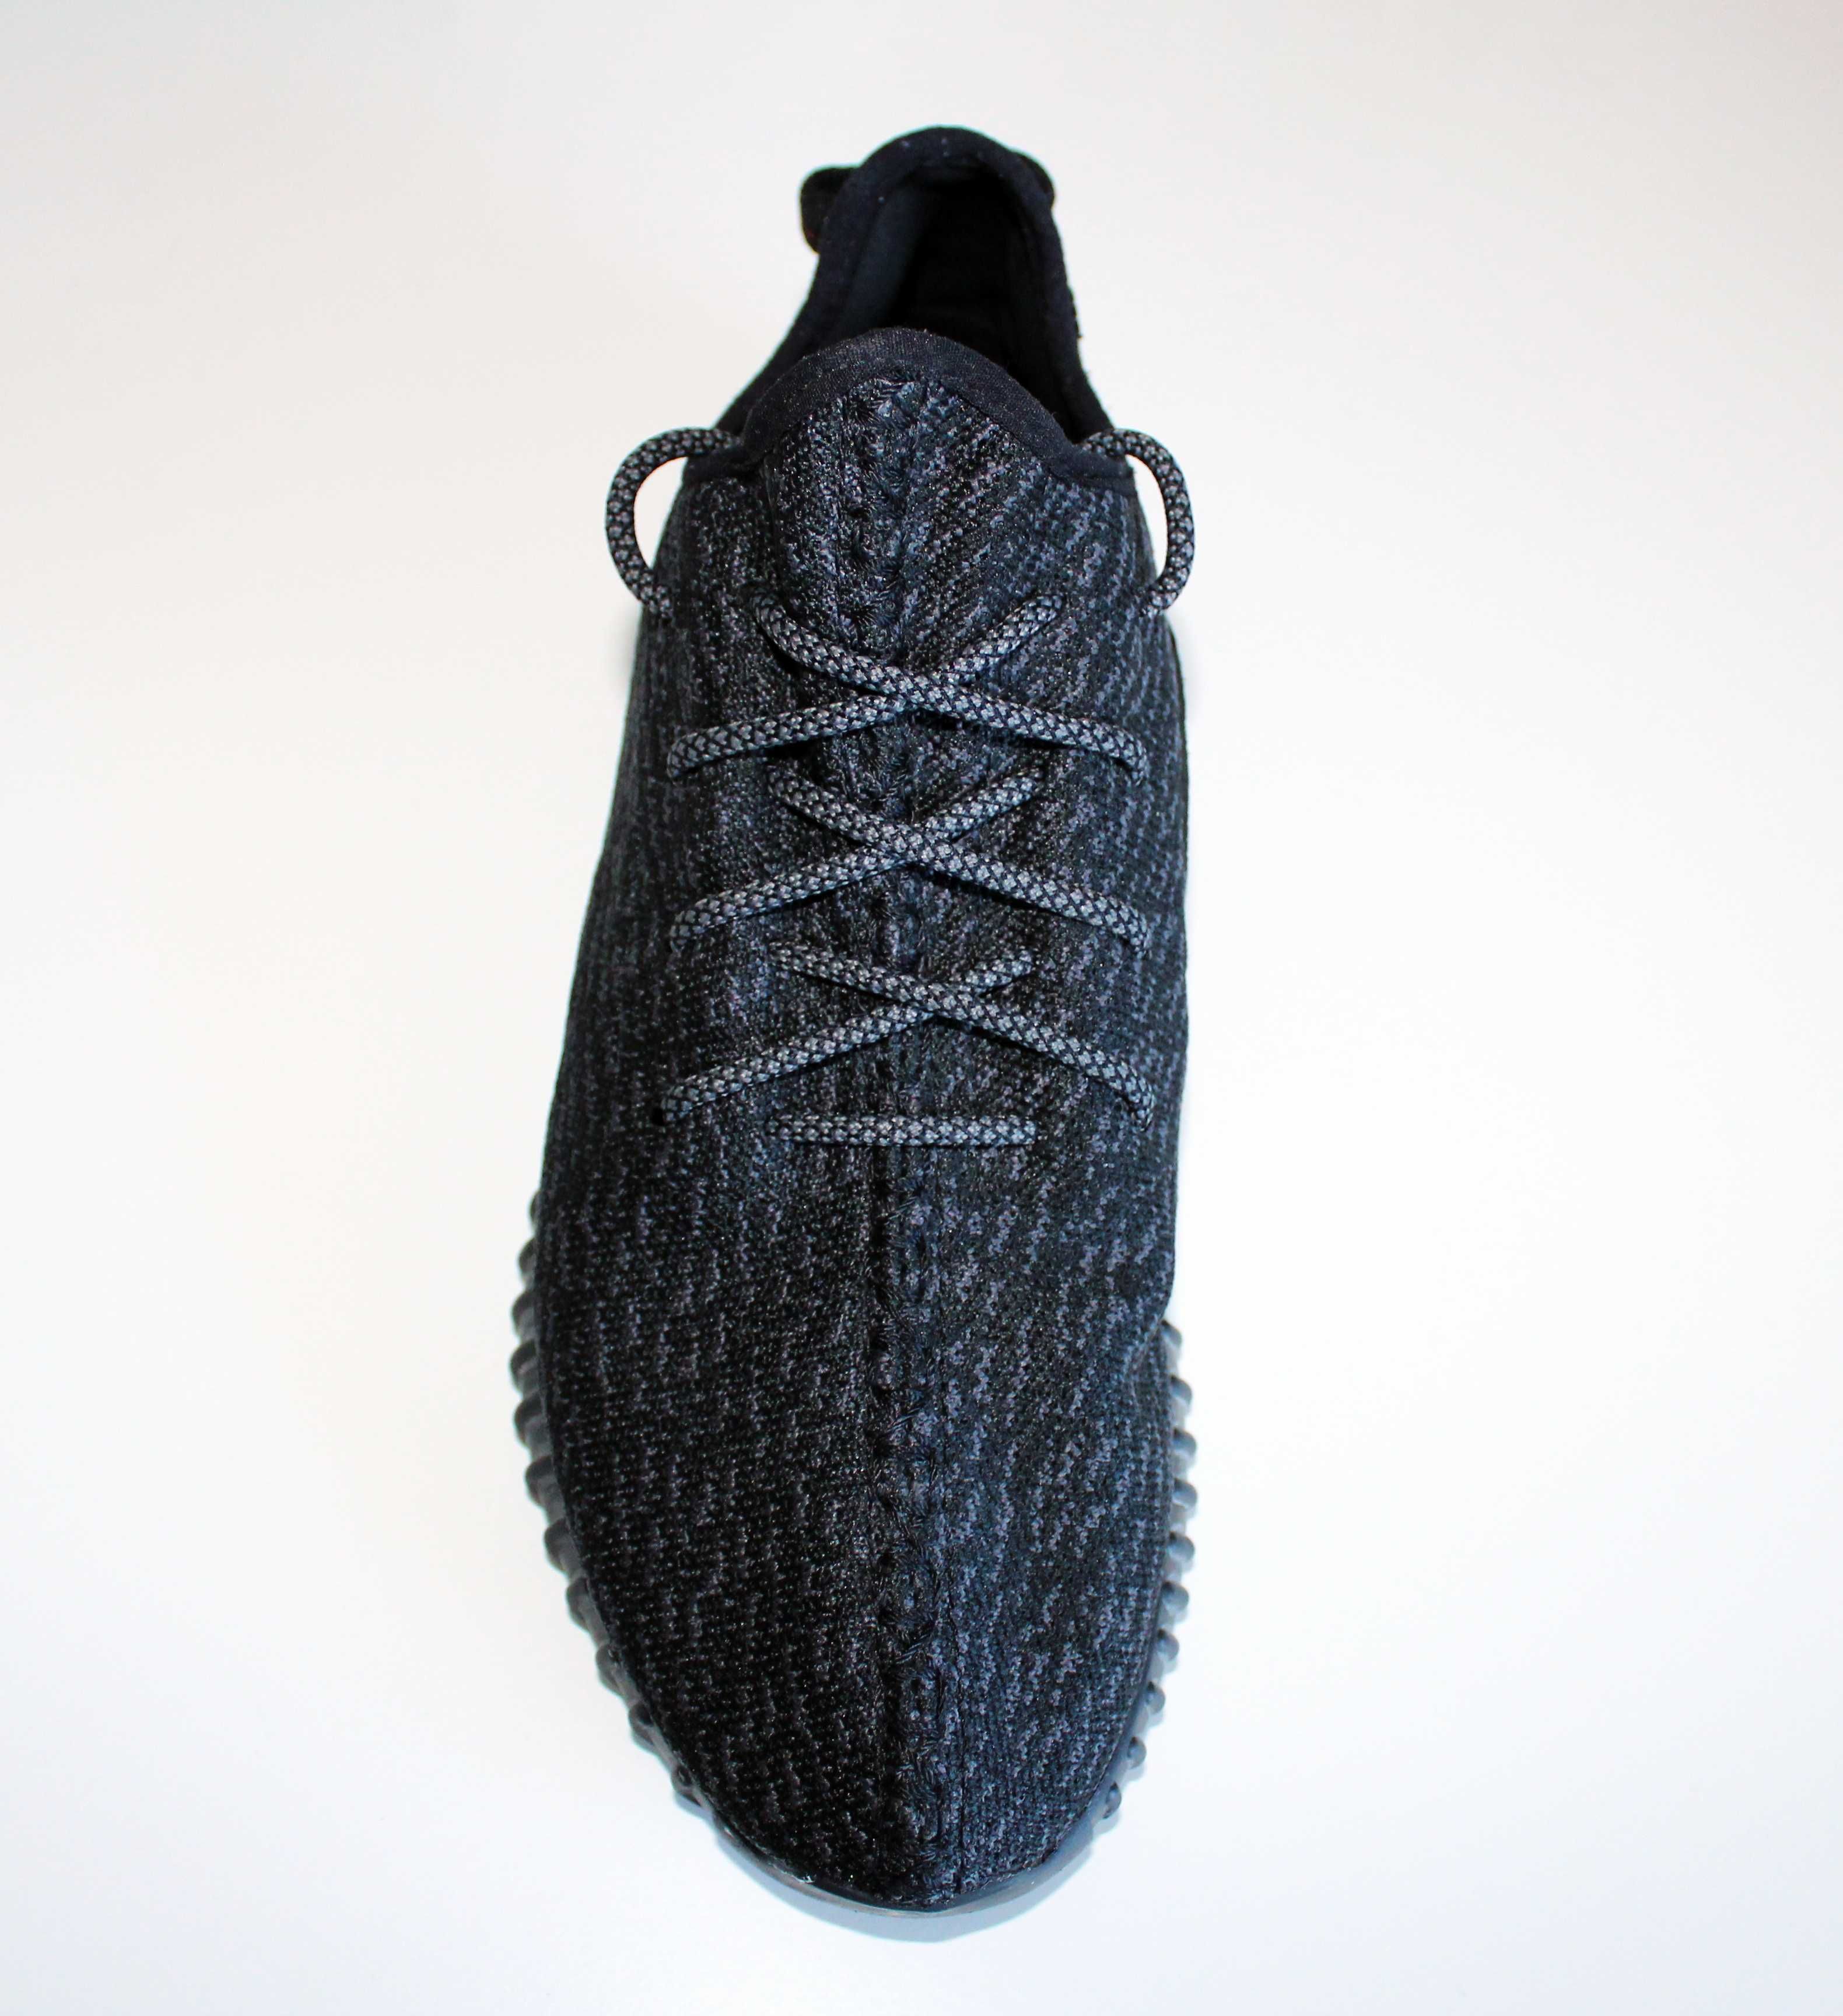 Buty męskie Adidas Yeezy czarne 42 rozmiar